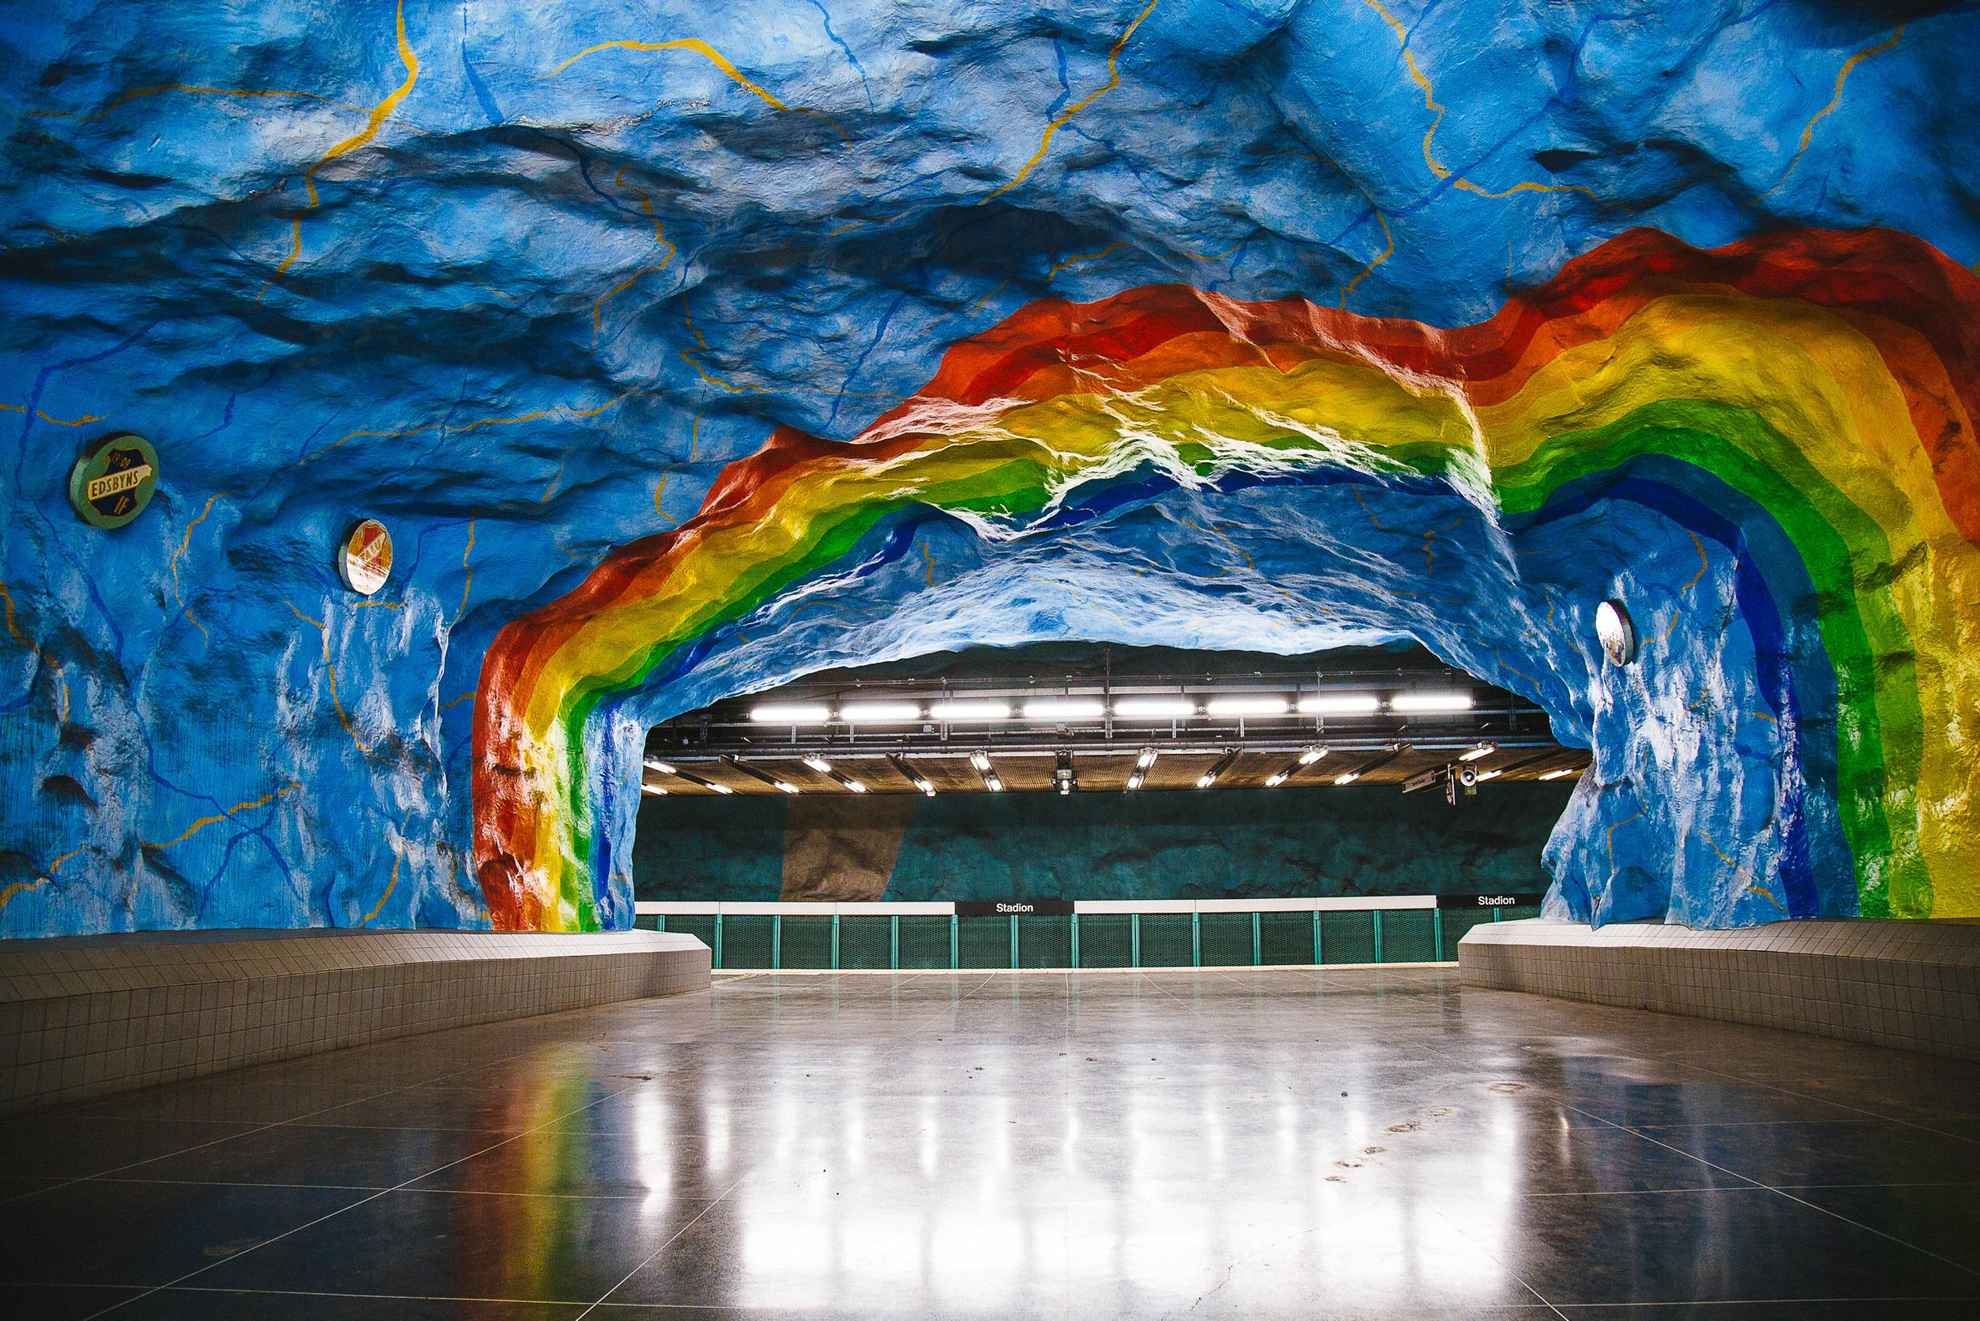 Eine U-Bahn Station in Stockholm die von Künstlern gestaltet wurde. Ein riesiger gemalter Regenbogen schmückt die Wand.